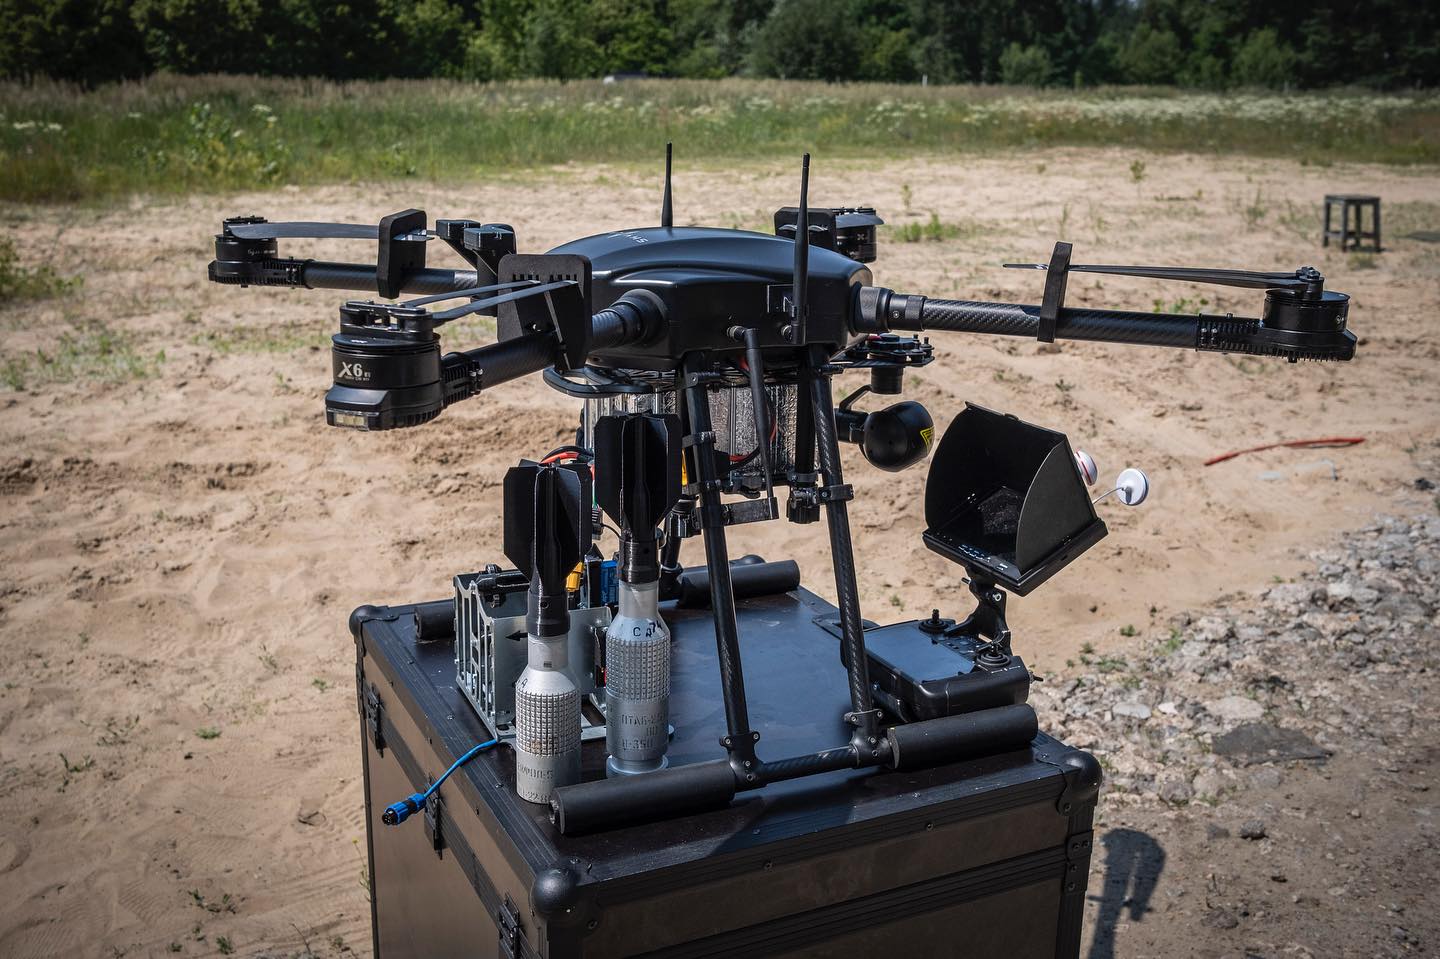 Das ukrainische Unternehmen SkyLab hat die Drohne Shoolika mk6 vorgestellt, die gegen elektronische Kriegsführung resistent ist